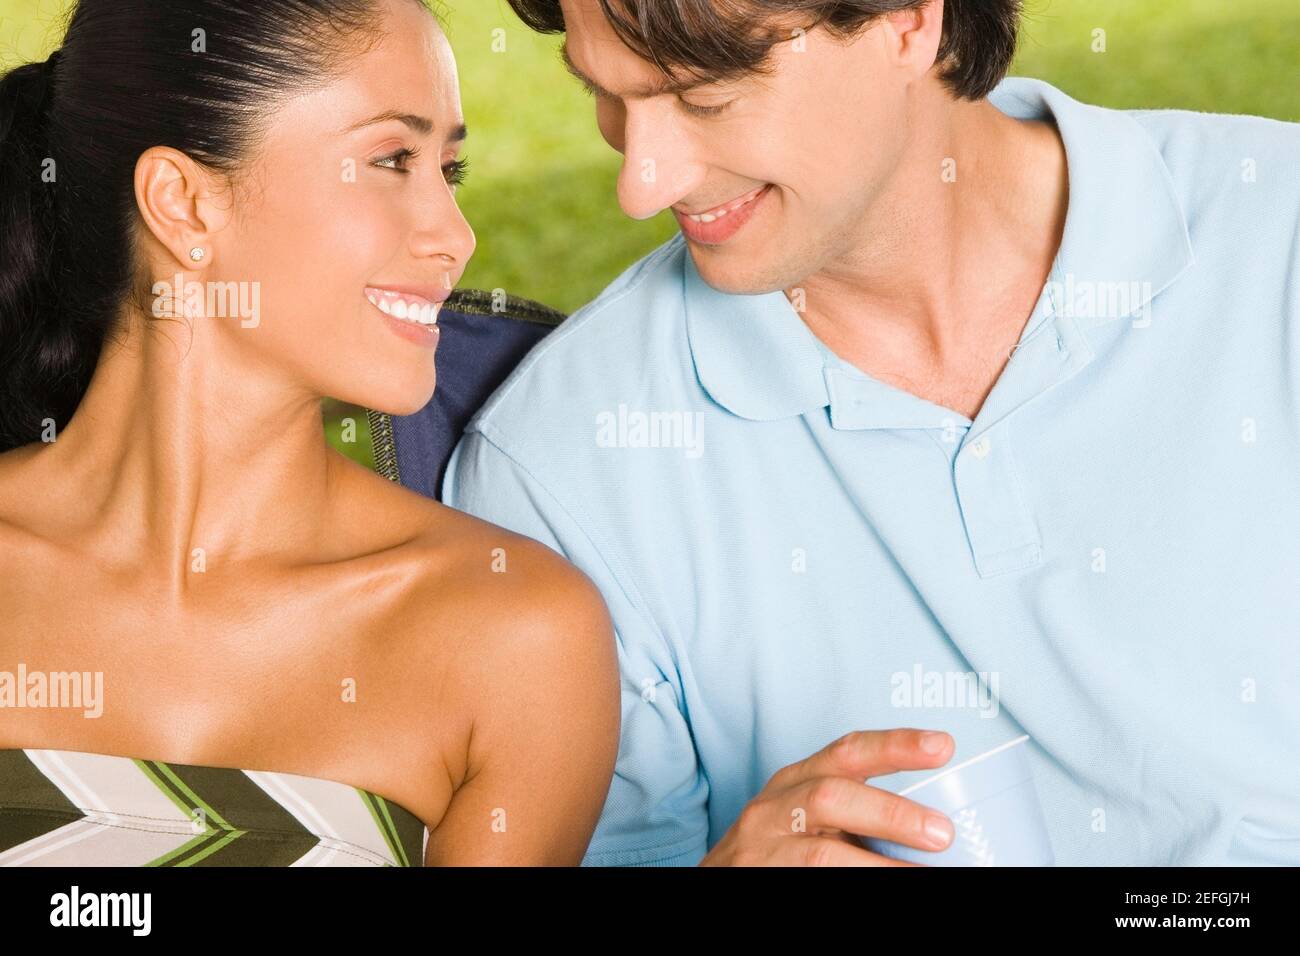 Close-up de un joven y un adulto medio hombre sonriendo Foto de stock